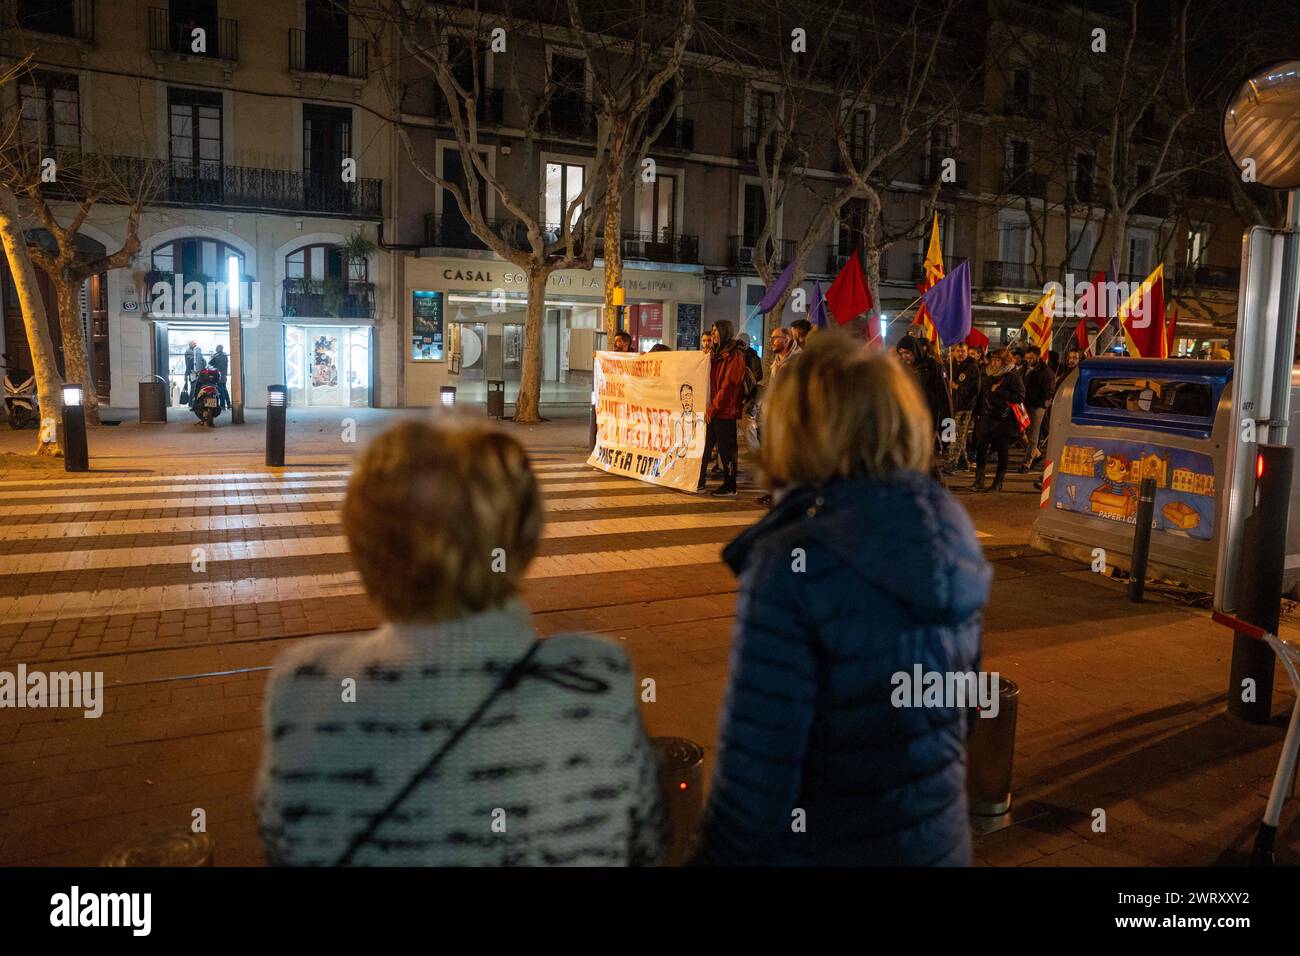 Manifestation in der kleinen Stadt Vilafranca del Pened&#xe8;s in der Nähe von Barcelona, &#x200b;&#x200b;gegen das Urteil des Obersten Gerichtshofs Spaniens gegen Adrian SAS, der als erster wegen der Proteste nach dem Referendum vom 1. Oktober 2017 zu Gefängnissen verurteilt werden könnte. Das Urteil wurde kurz nachdem der spanische Kongress das Amnestiegesetz gebilligt hatte, das ihm zugute kommen konnte. SAS wird beschuldigt, zwei Mossos d’Esquadra (katalanische Polizei) mit einem Fahnenmast angegriffen zu haben, was die Verteidigung bestreitet, da es keine Bilder gibt, die dies beweisen. Die Strafe verurteilt ihn zu drei Jahren und sechs Monaten Gefängnis. SAS hat bereits gelesen Stockfoto